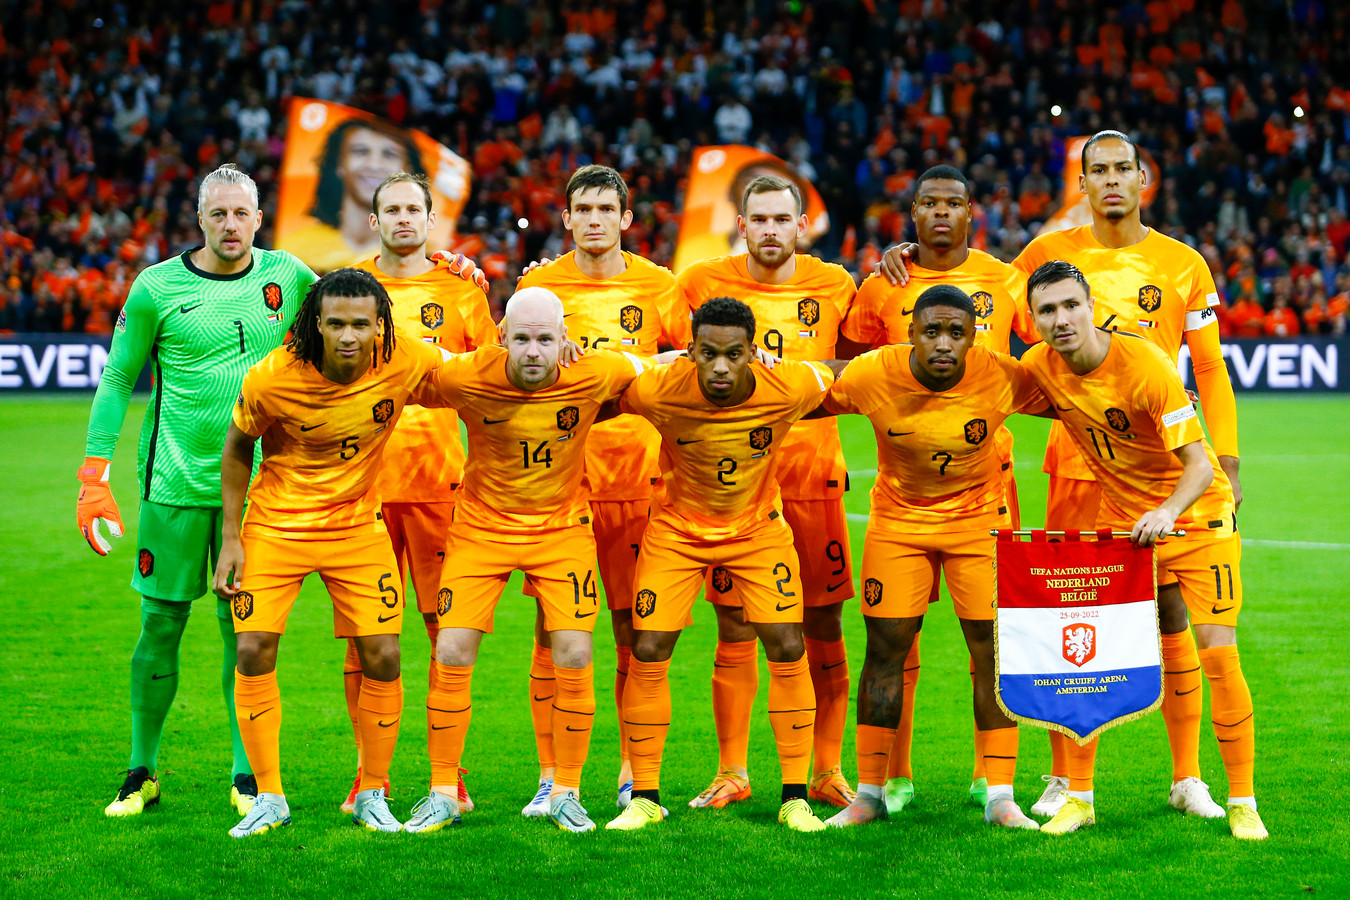 De elftalfoto van Oranje voor de interland tegen België in de Nations League.